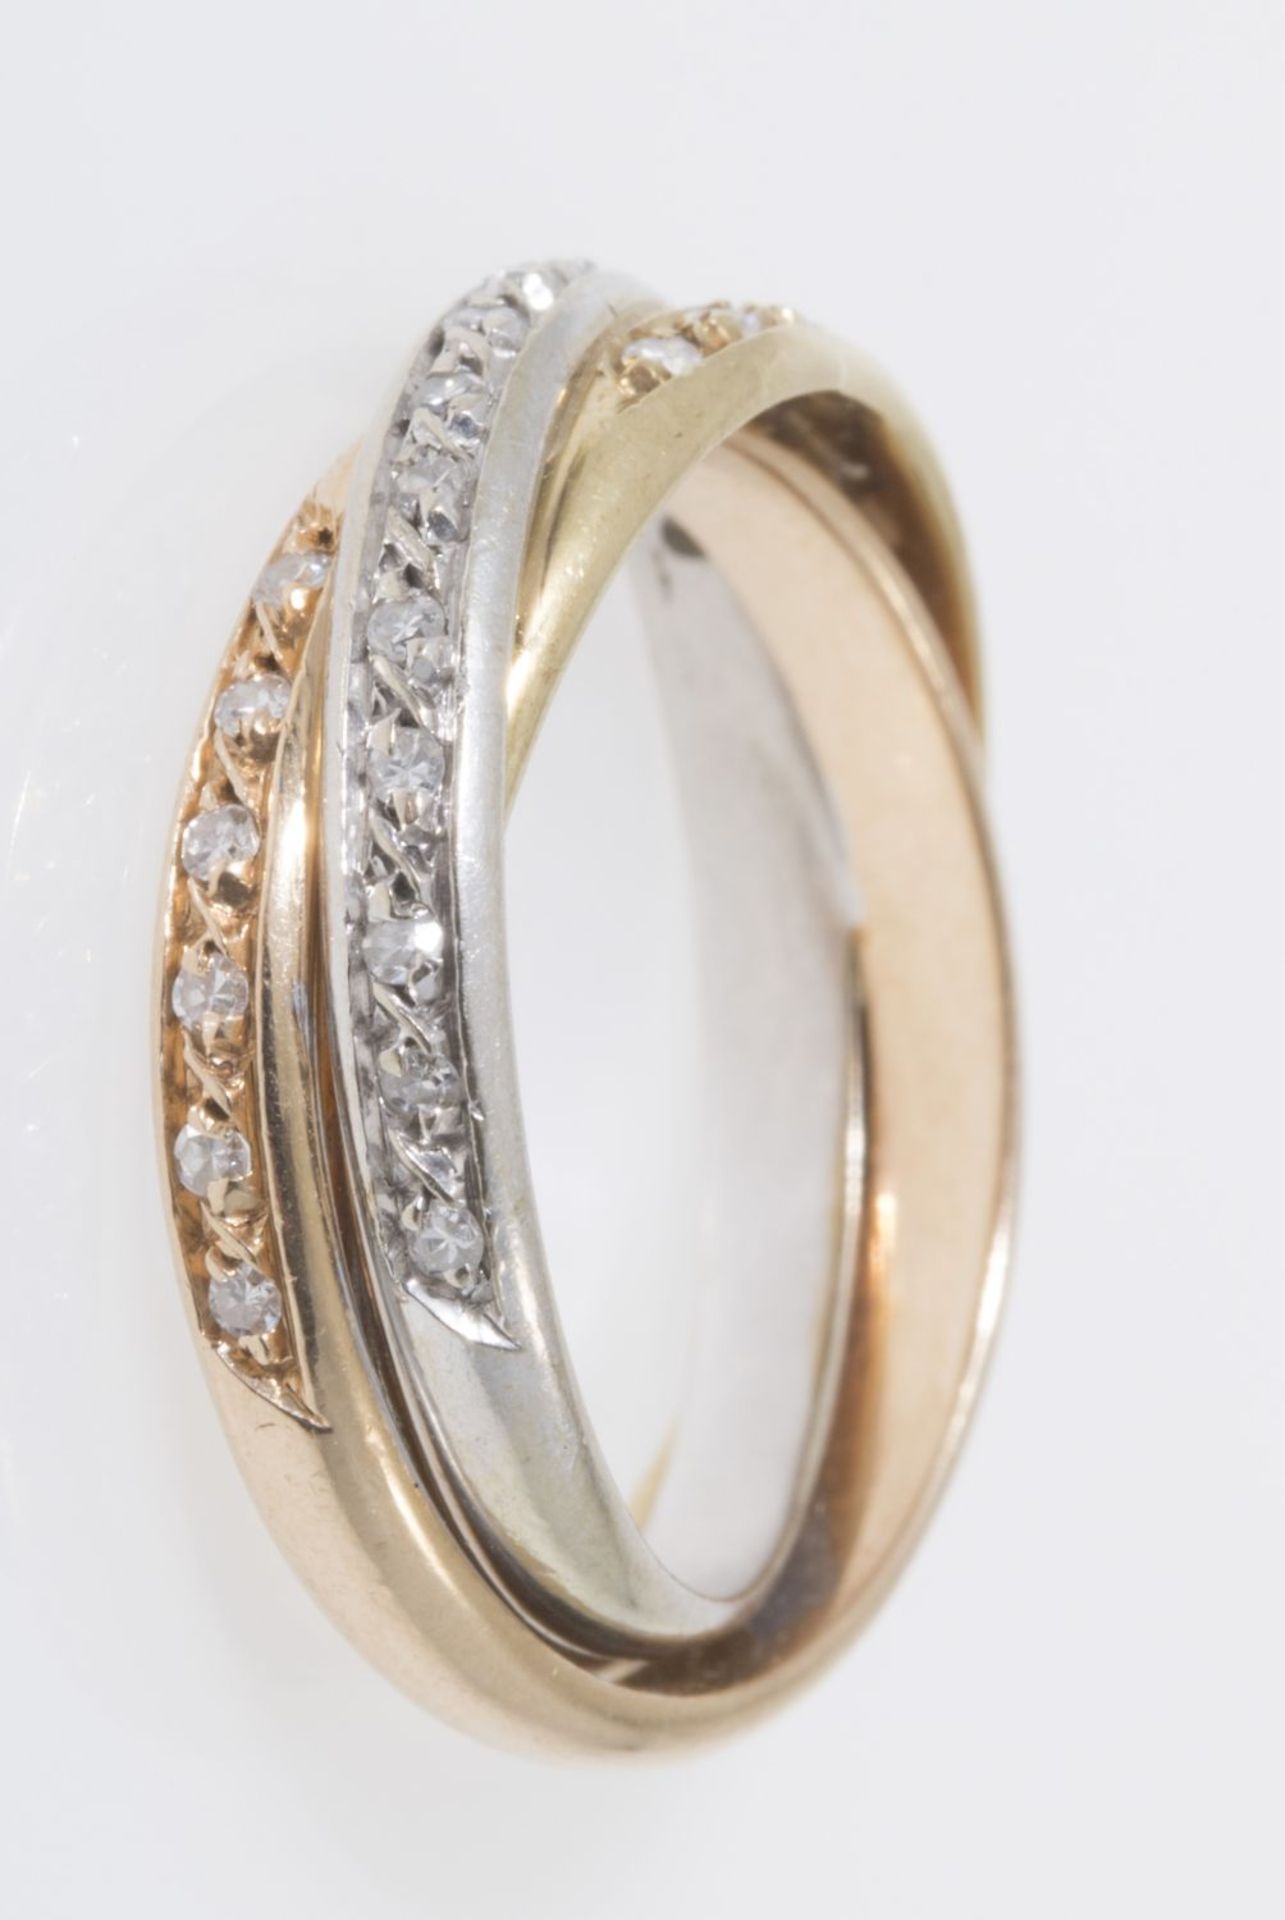 Zarter Diamant-Ring à trois couleurs Gelbgold, Weißgold und Rotgold 585. Ausgefasst mit kleinen 8/8- - Bild 3 aus 3